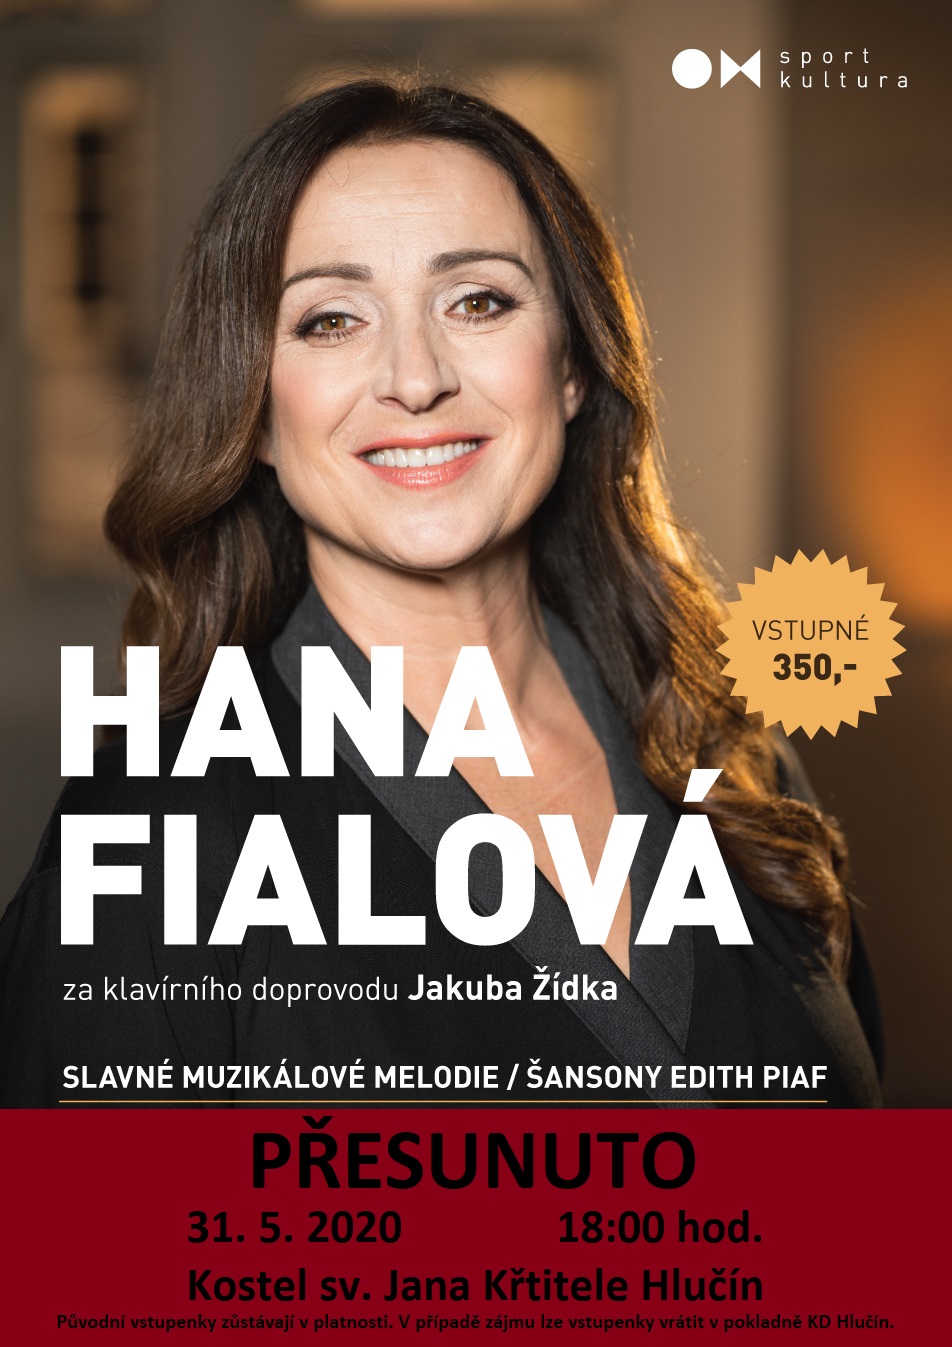 Hana Fialová: Slavné muzikálové melodie, šansony Edith Piaf